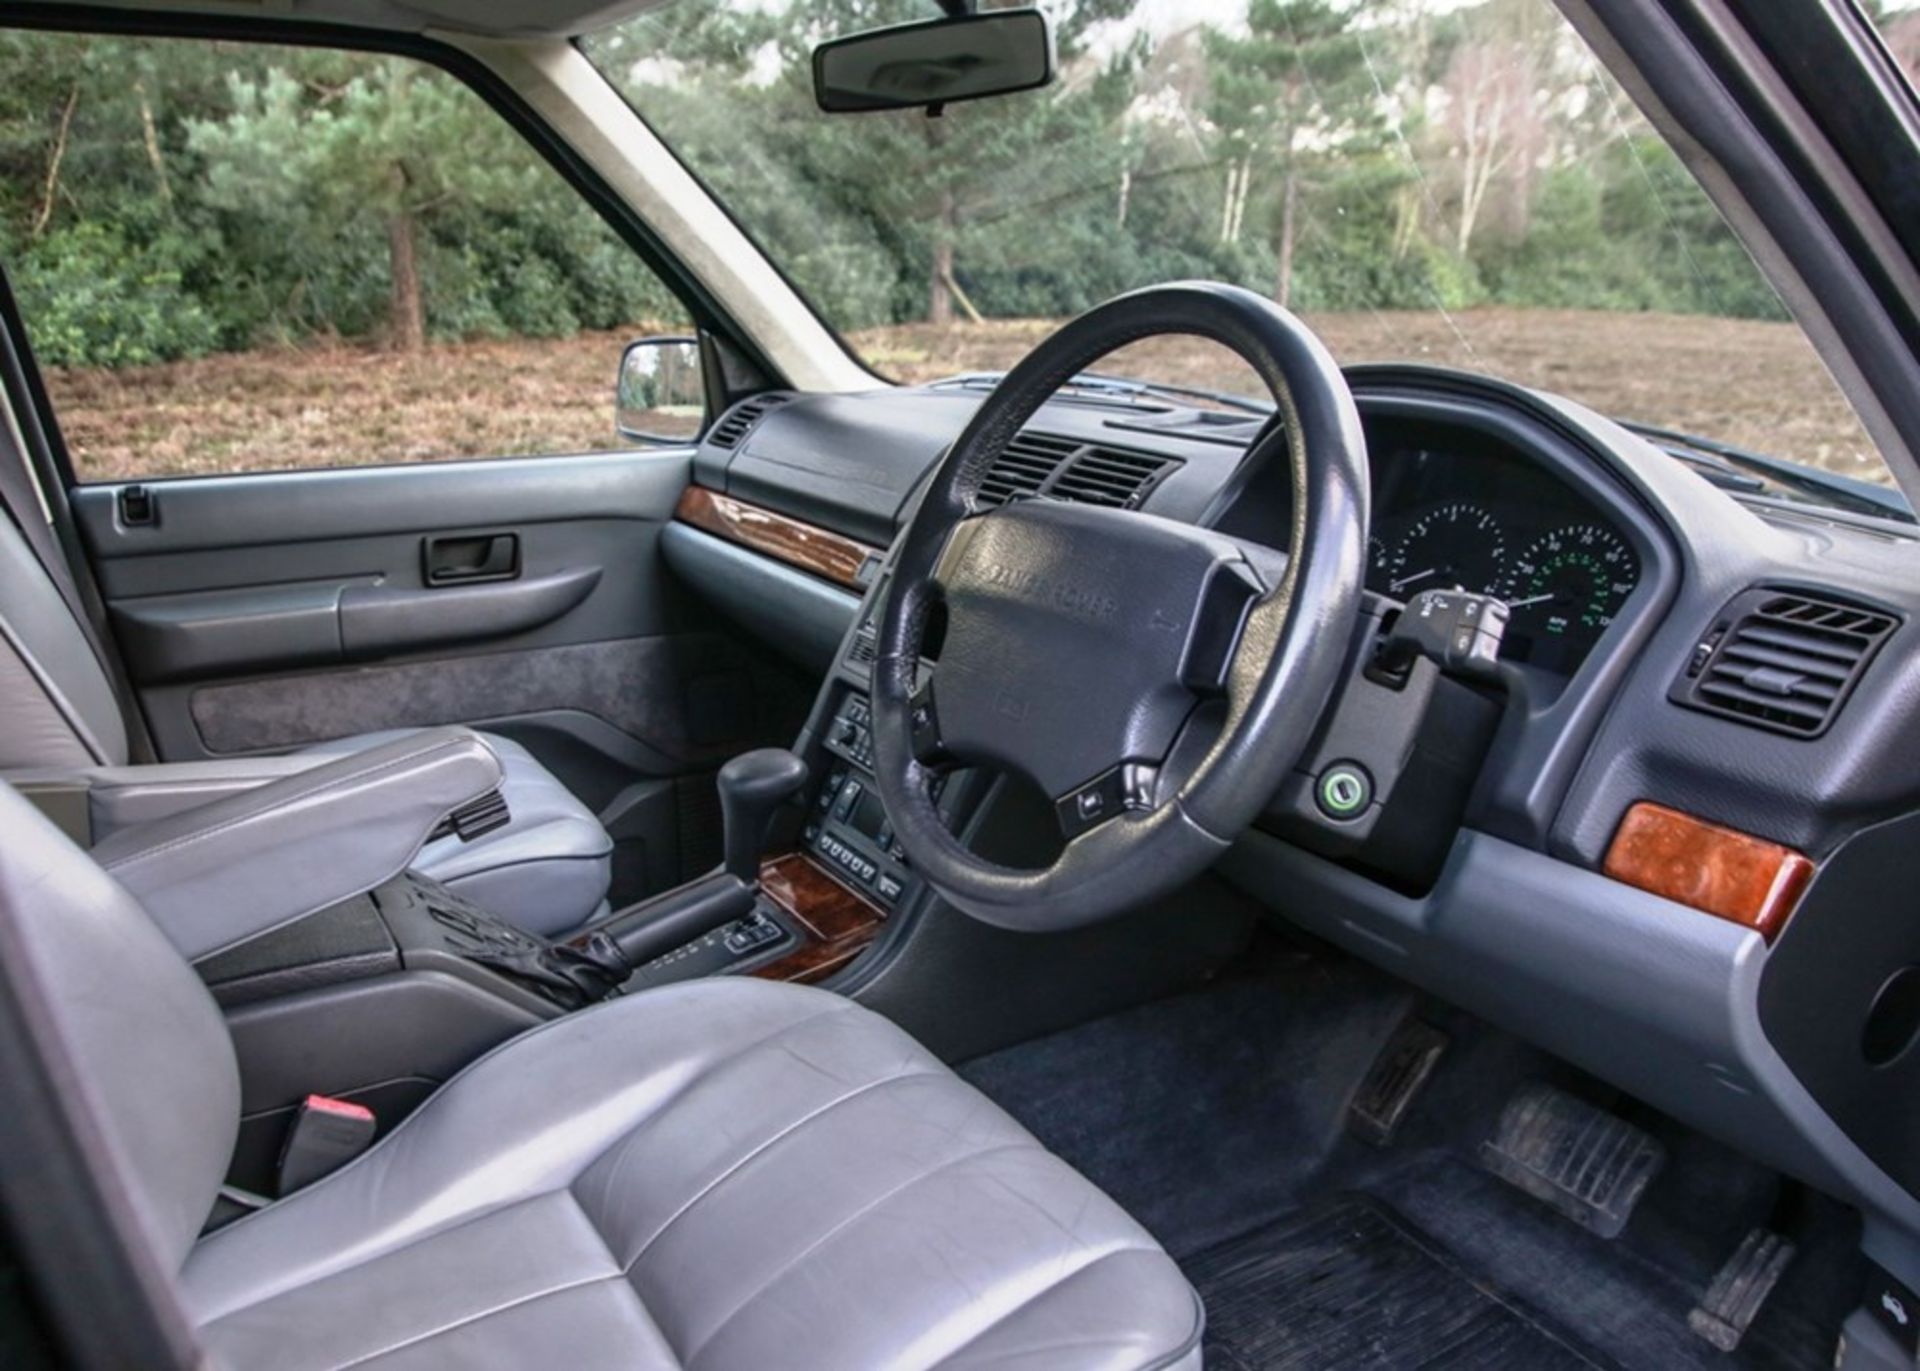 1997 Range Rover SE (4.0 litre) - Image 5 of 9